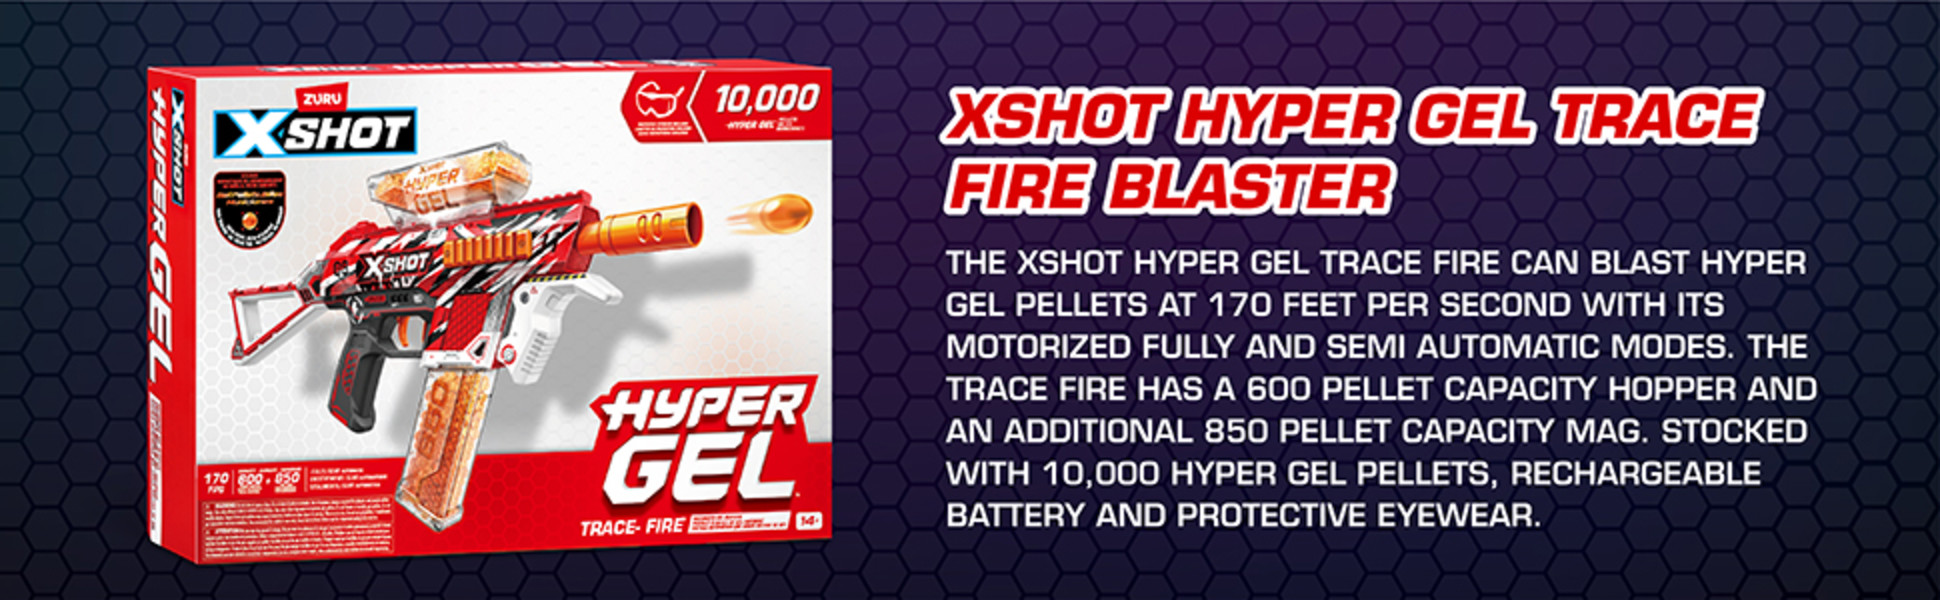 Take a look at XShot Hyper Gel Trace Fire! #xshot #hypergel #gelblasters # XShot 